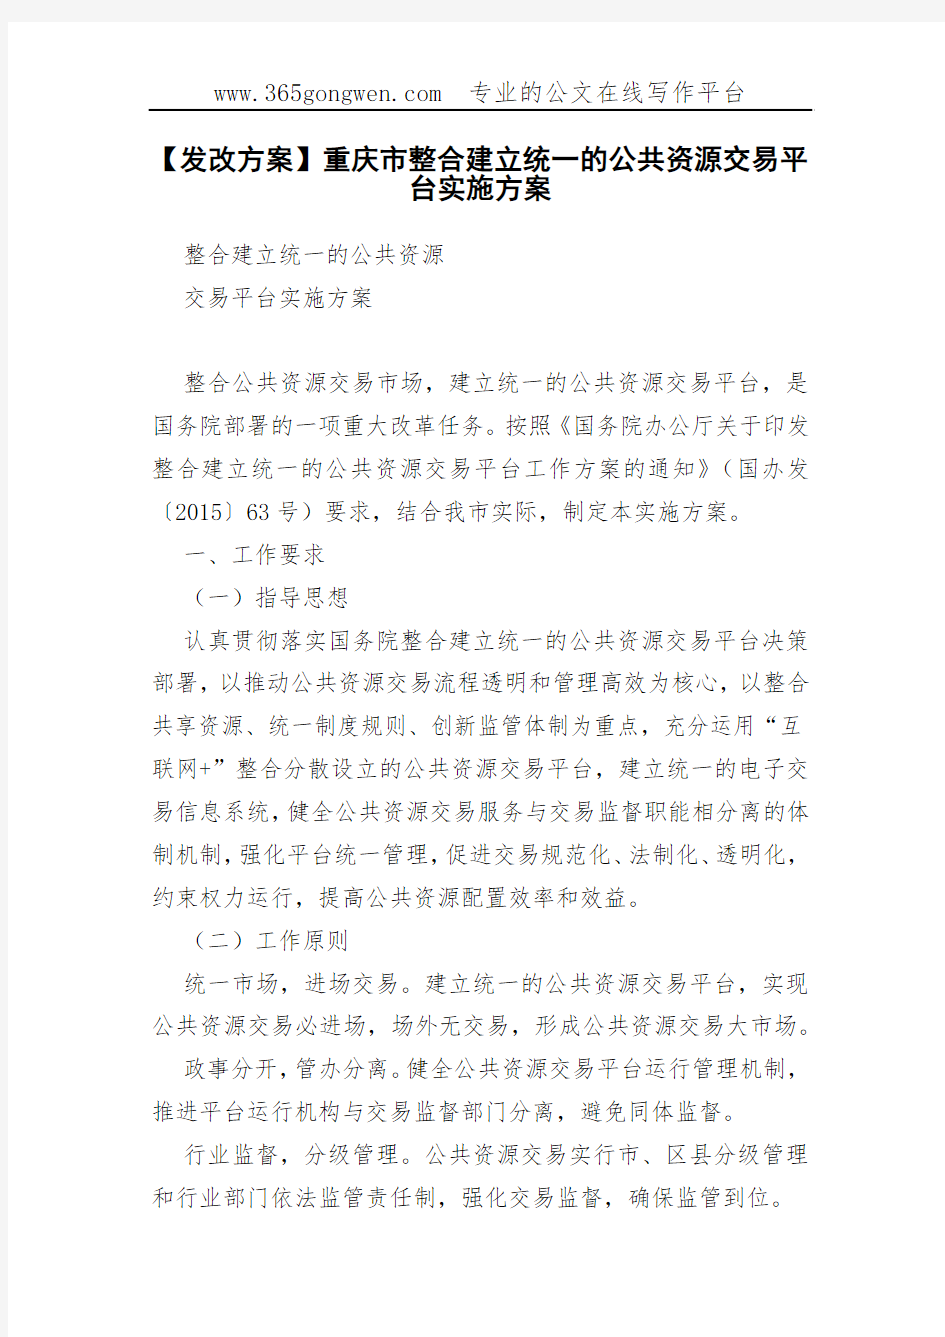 【发改方案】重庆市整合建立统一的公共资源交易平台实施方案